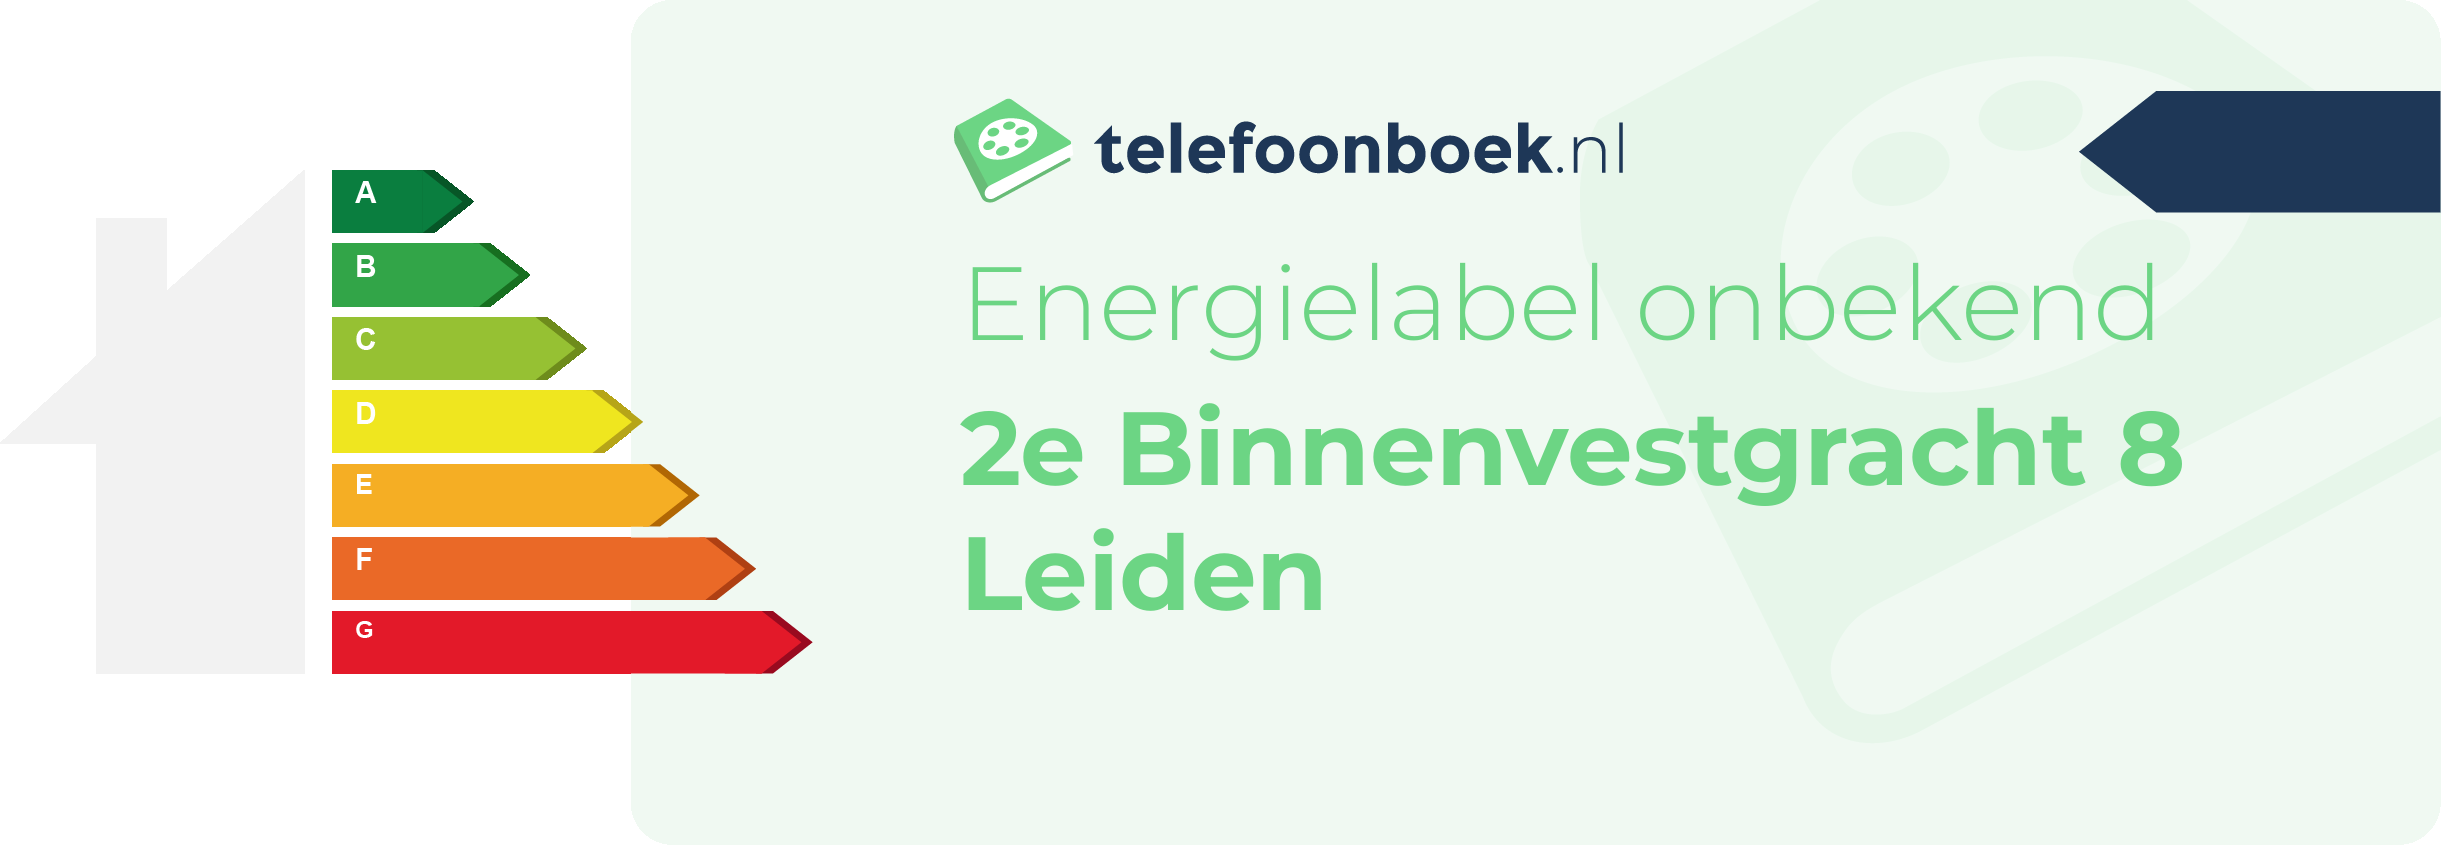 Energielabel 2e Binnenvestgracht 8 Leiden